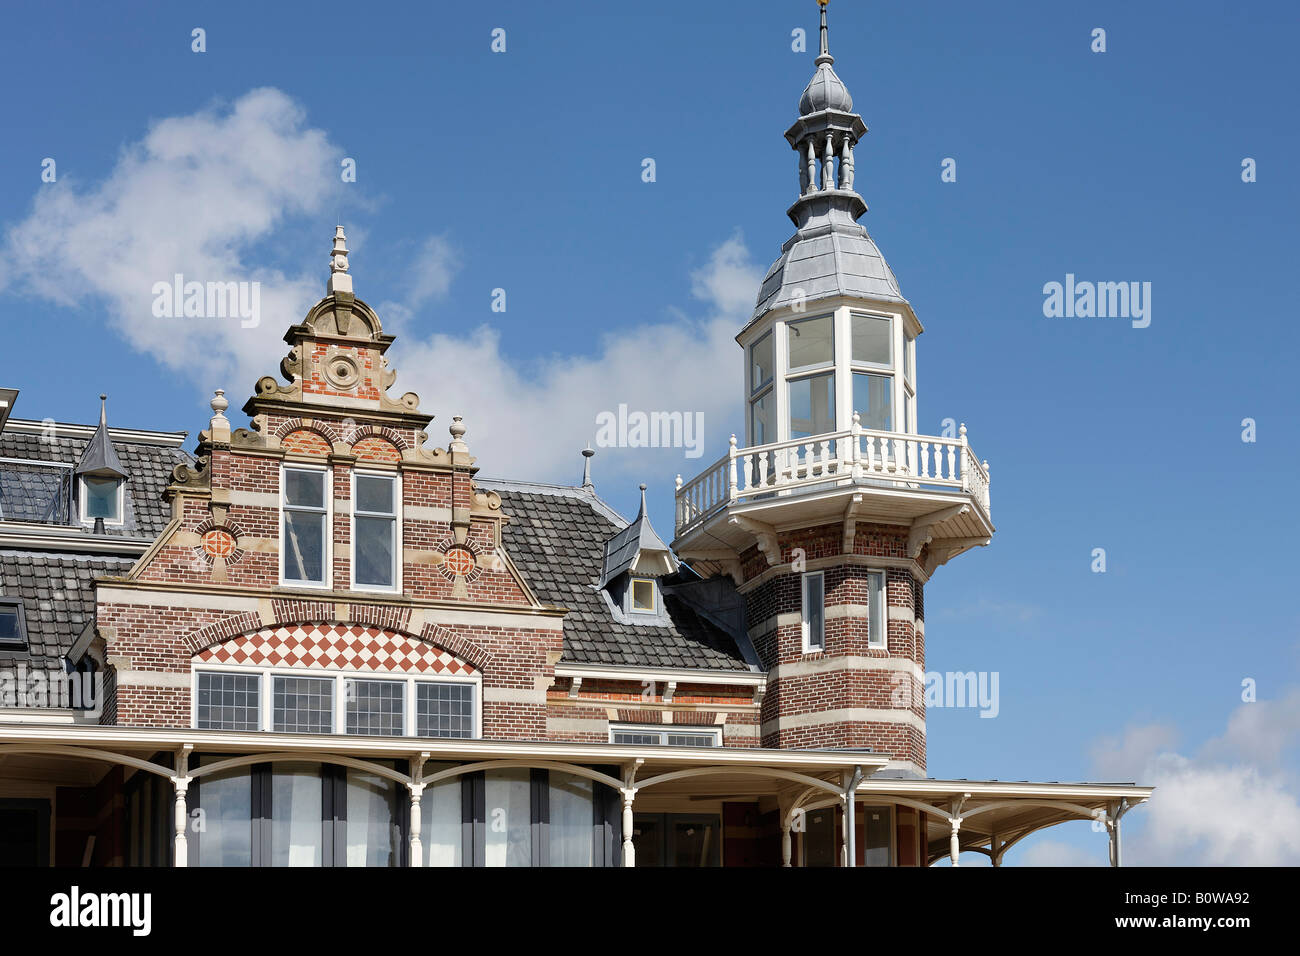 Petite tour, la façade de l'immeuble, pavillon de plage, Domburg, Walcheren, Zélande, Pays-Bas Banque D'Images